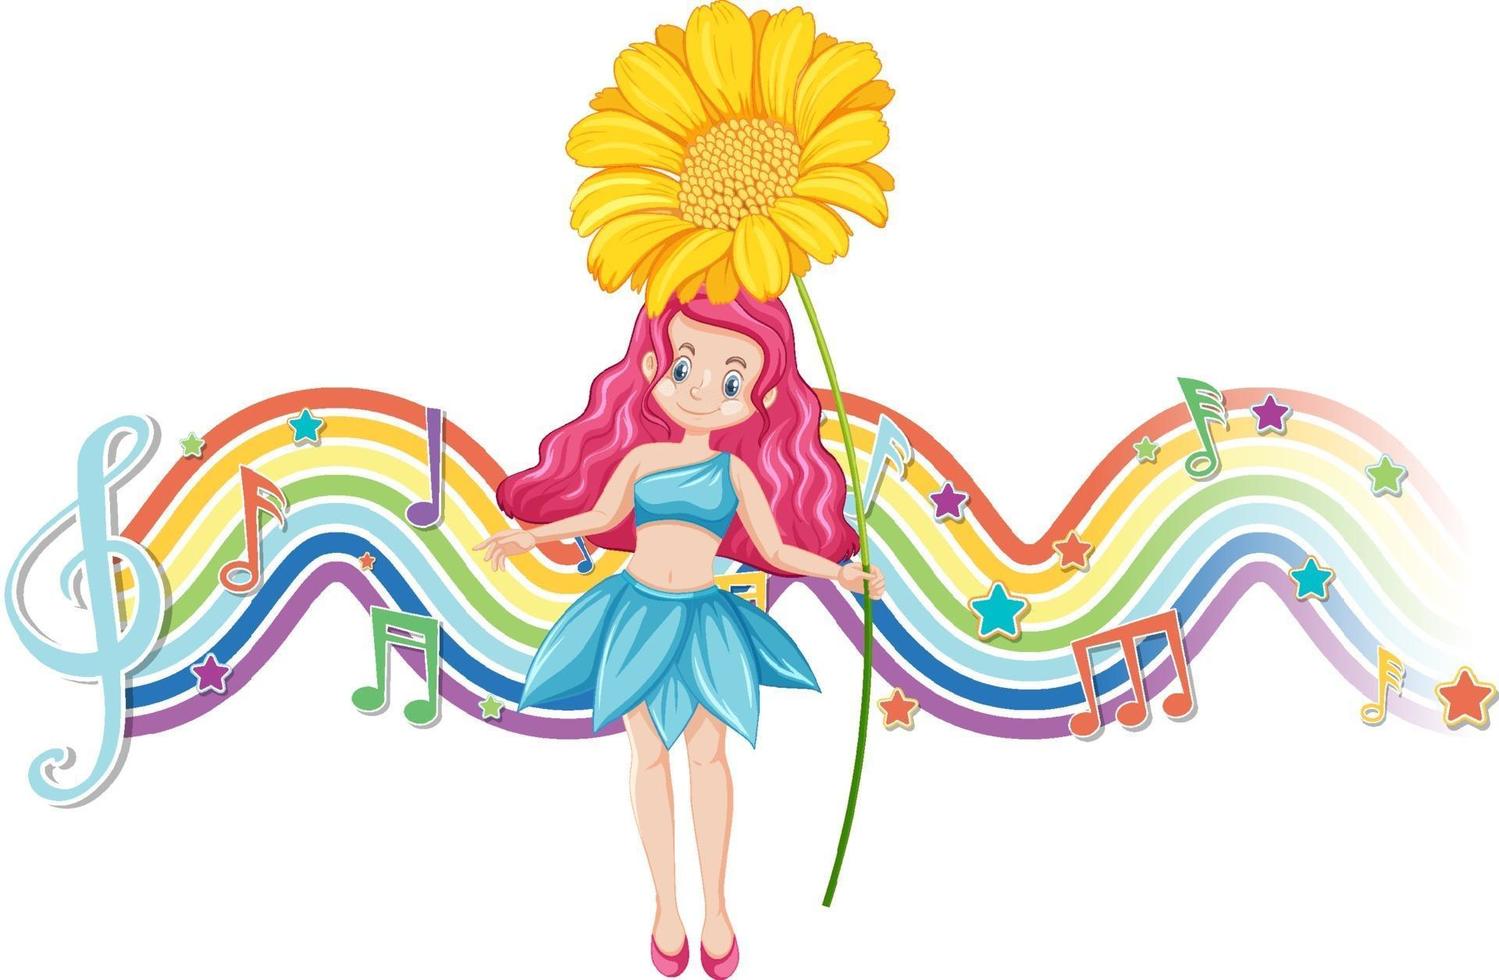 simpatico personaggio dei cartoni animati fata con onda arcobaleno vettore